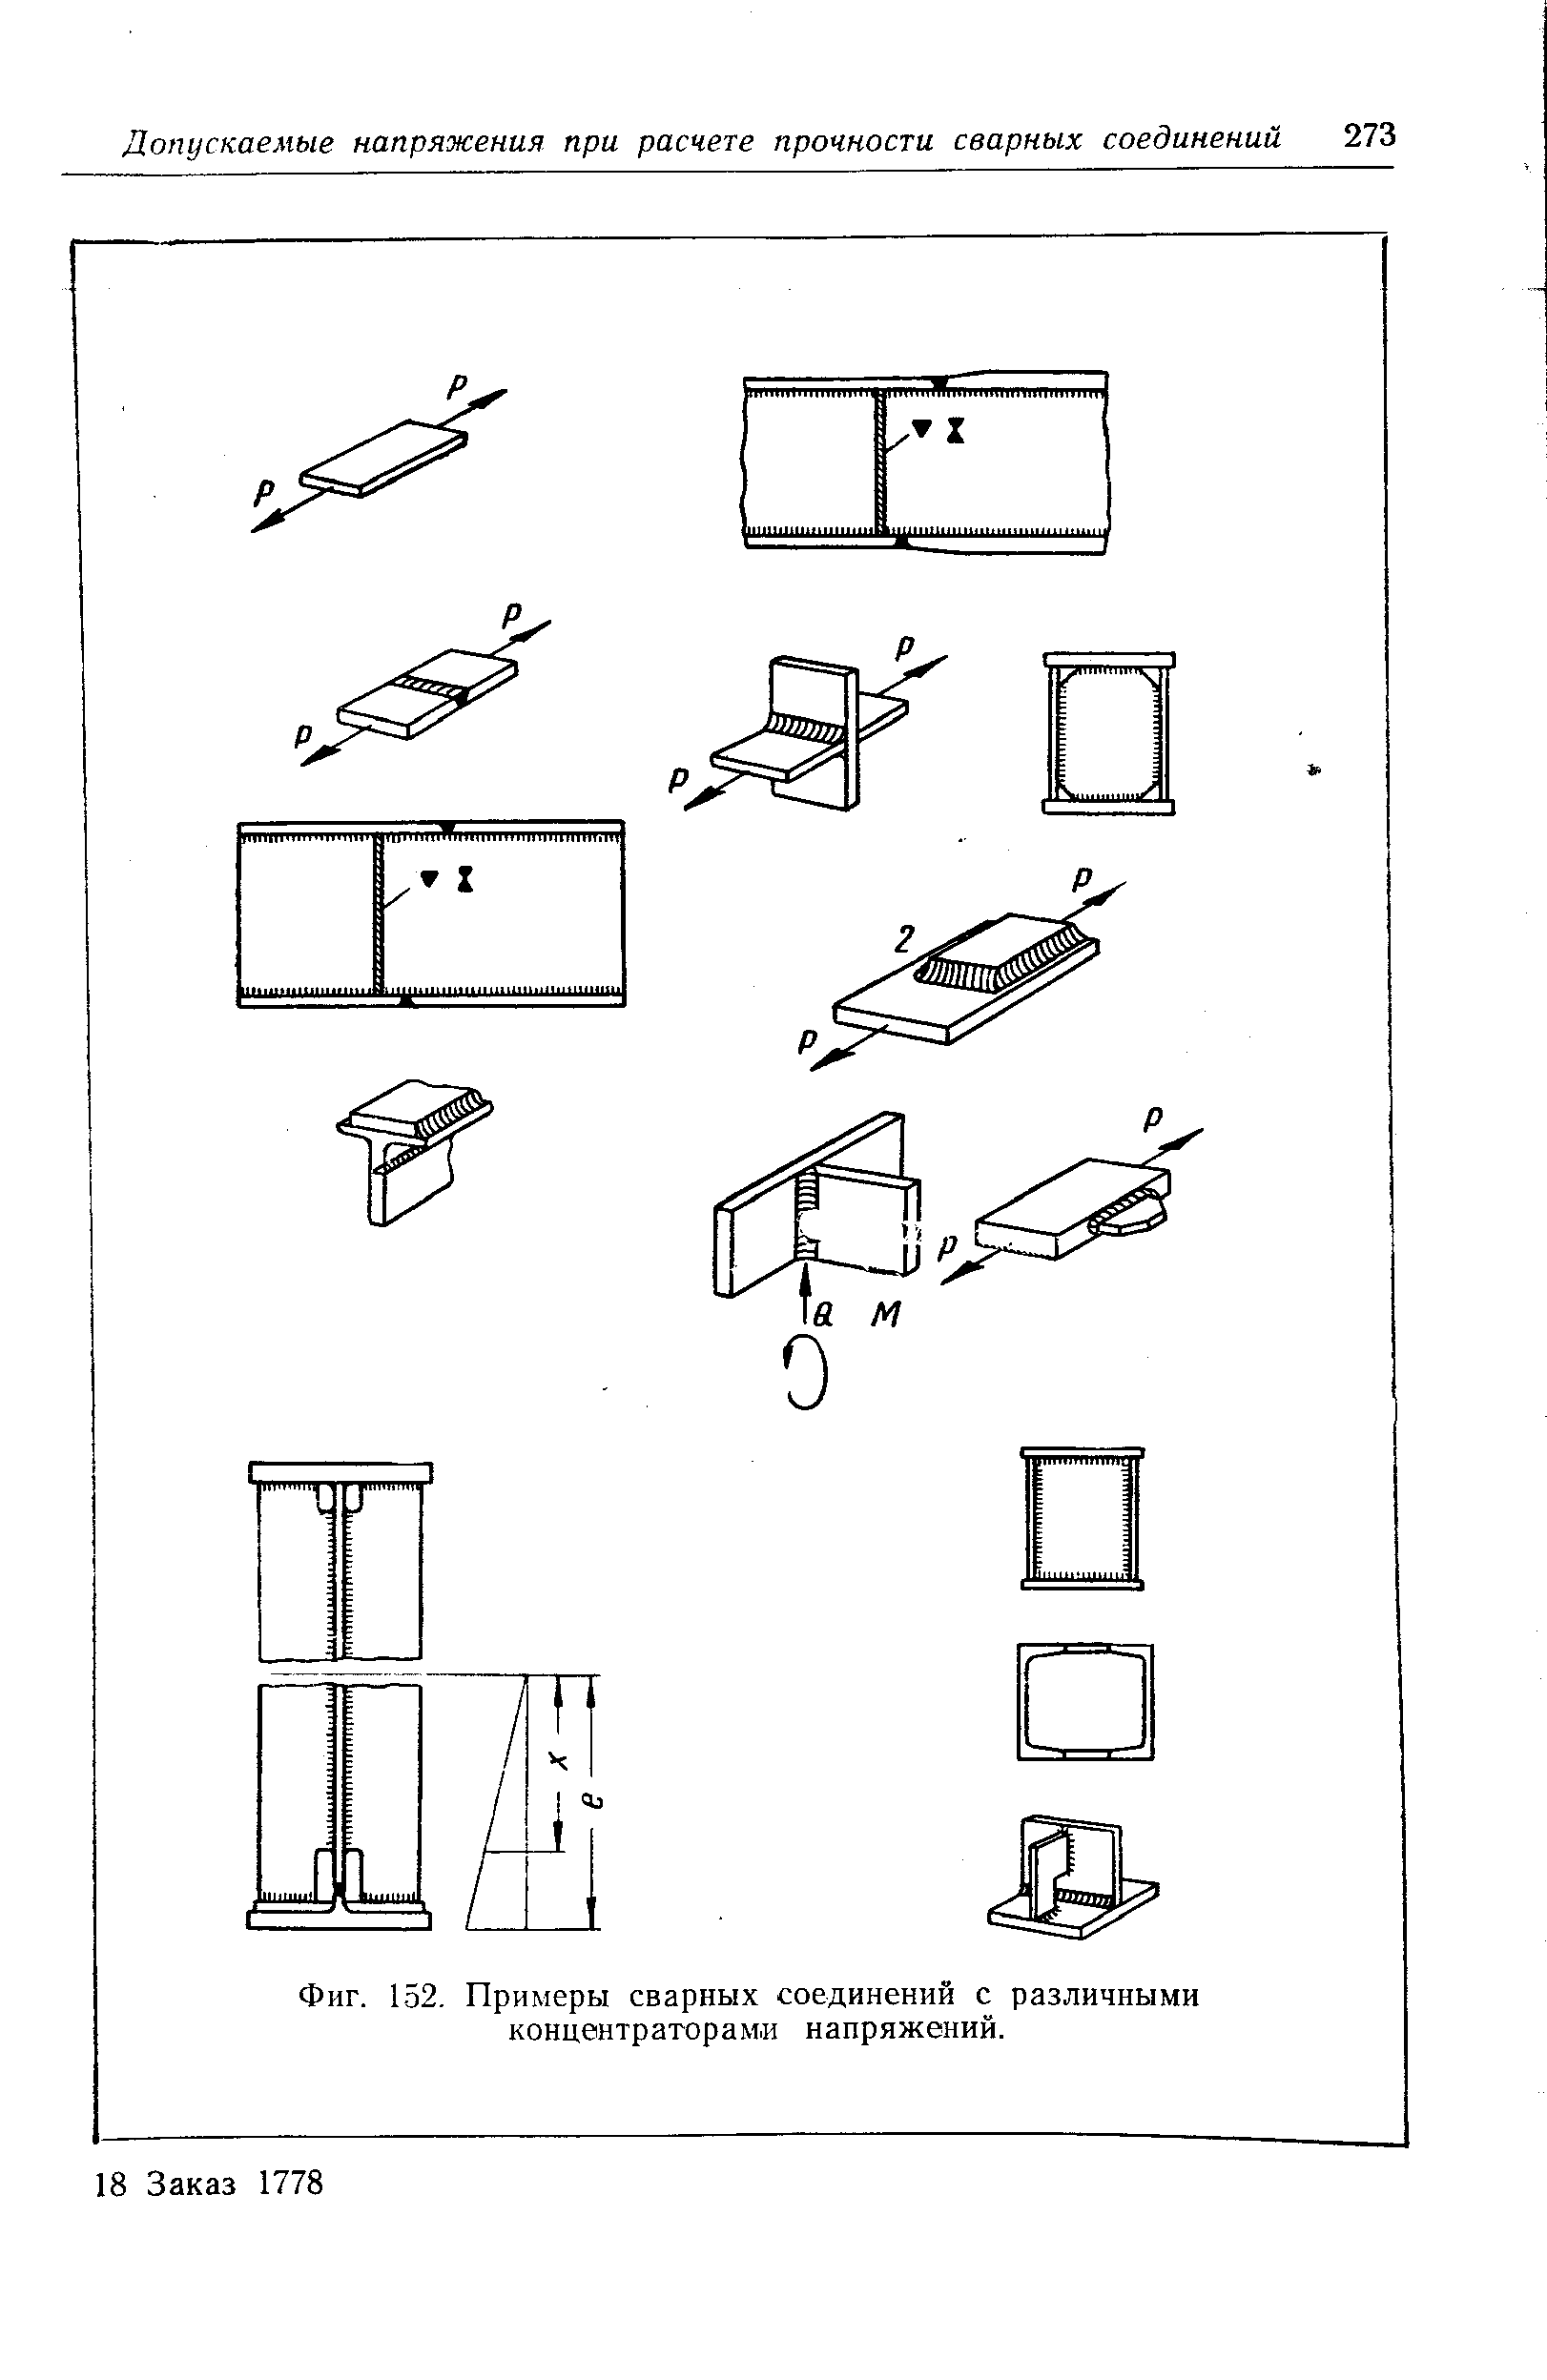 Фиг. 152, Примеры сварных соединений с различными концентраторами напряжений.
